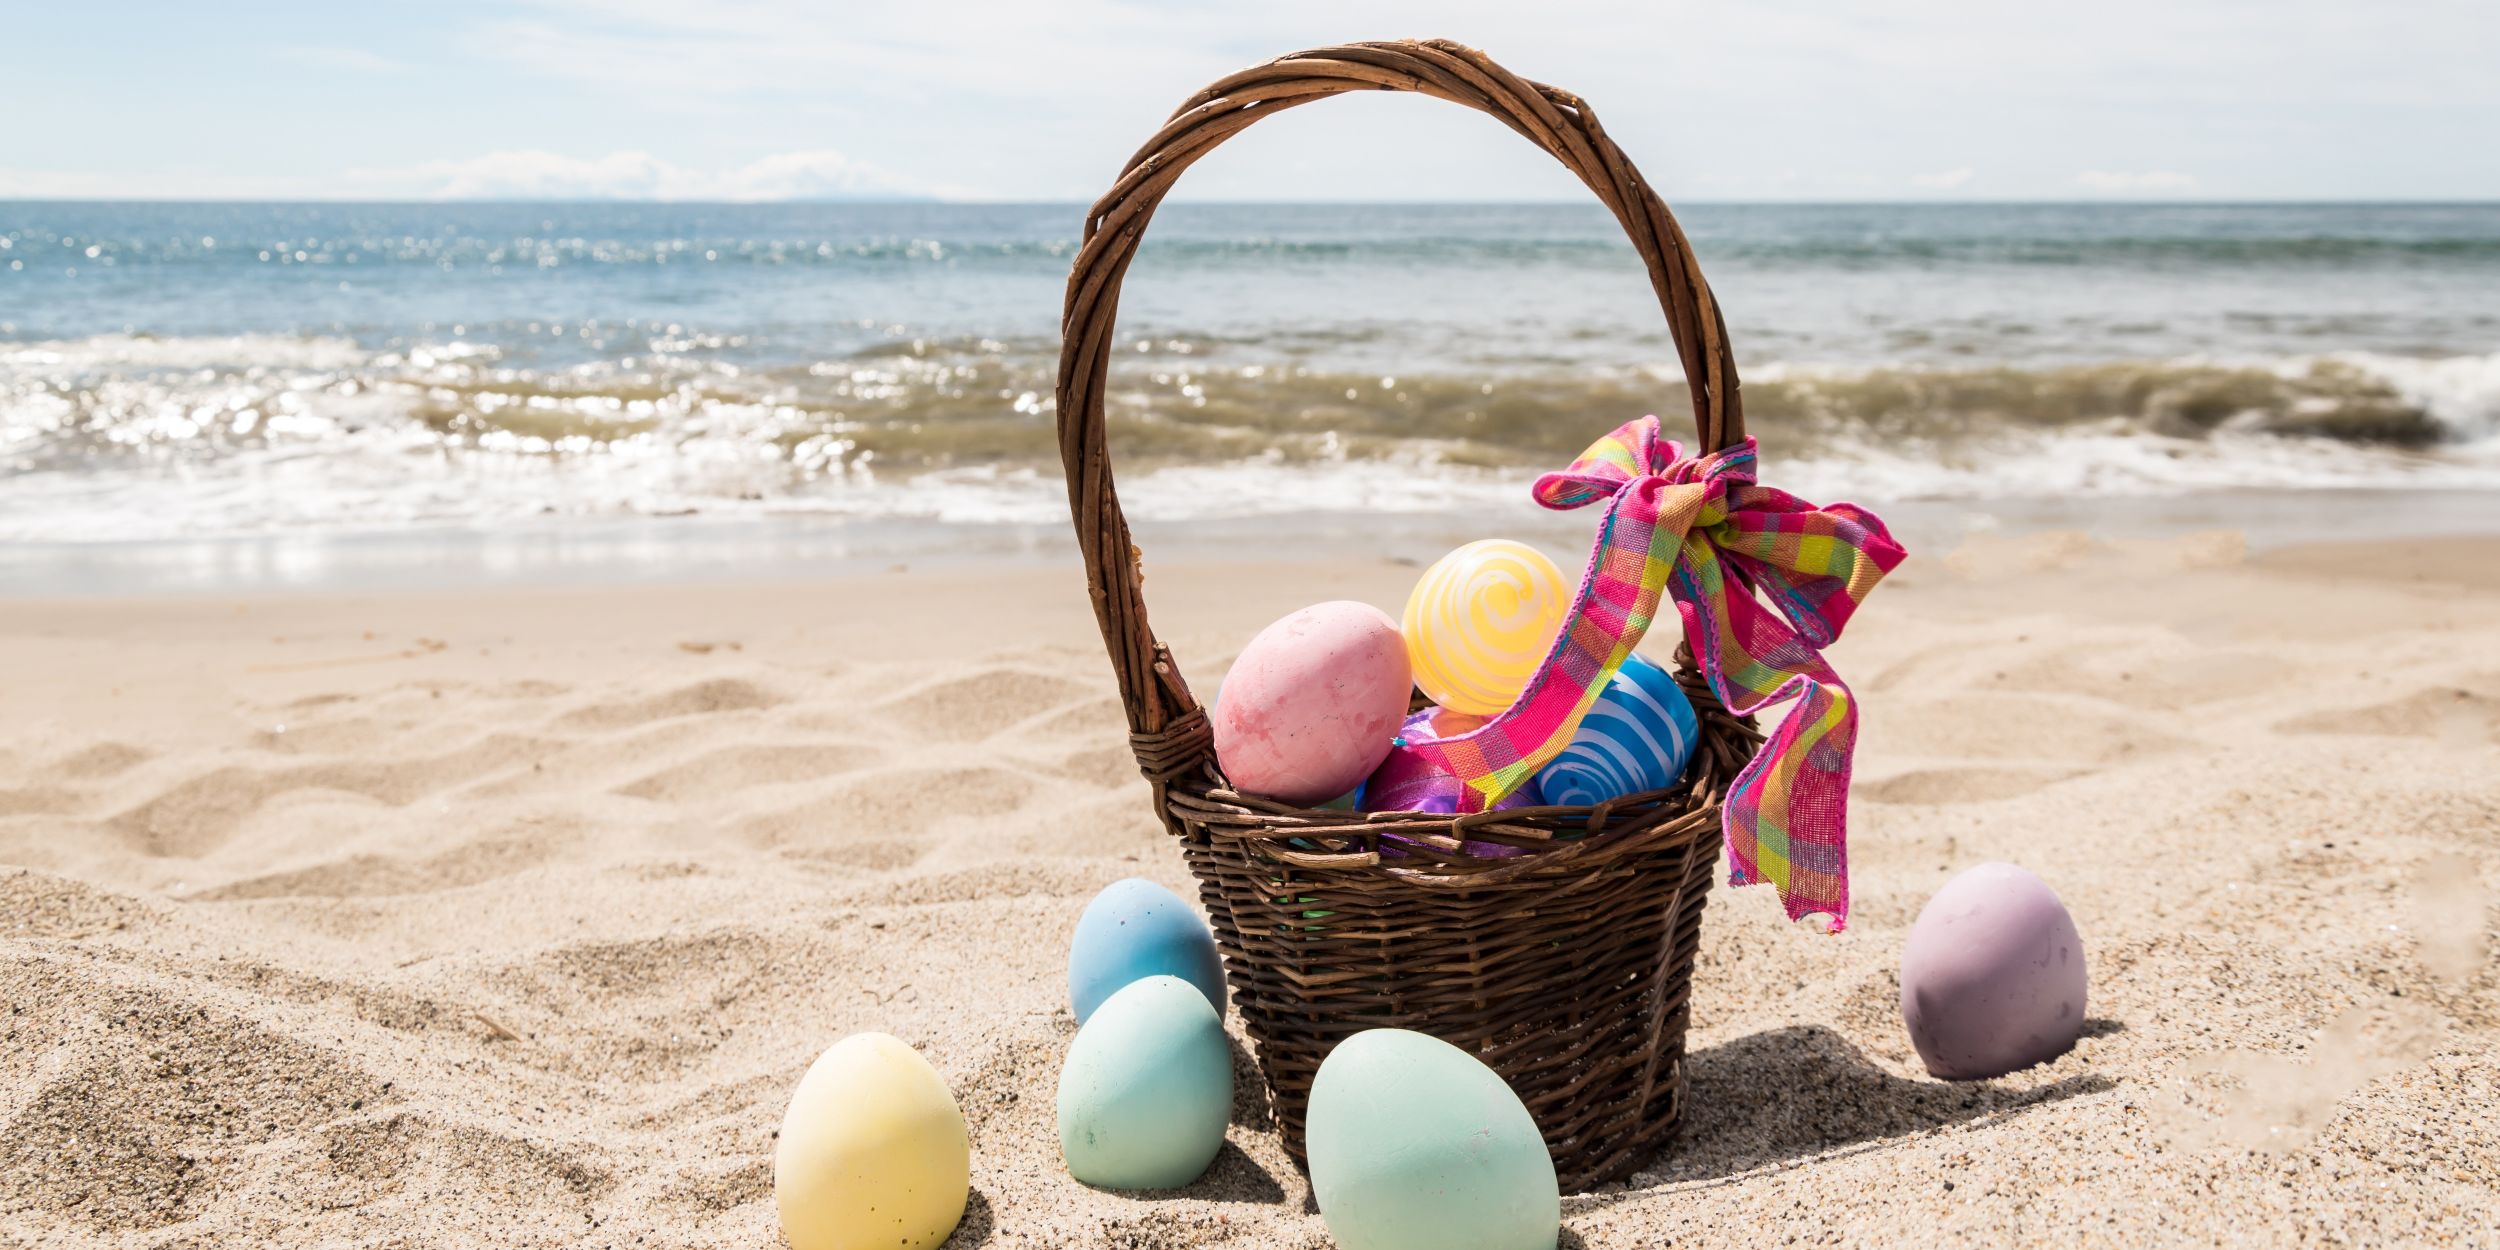 A Basket Of Eggs On A Beach